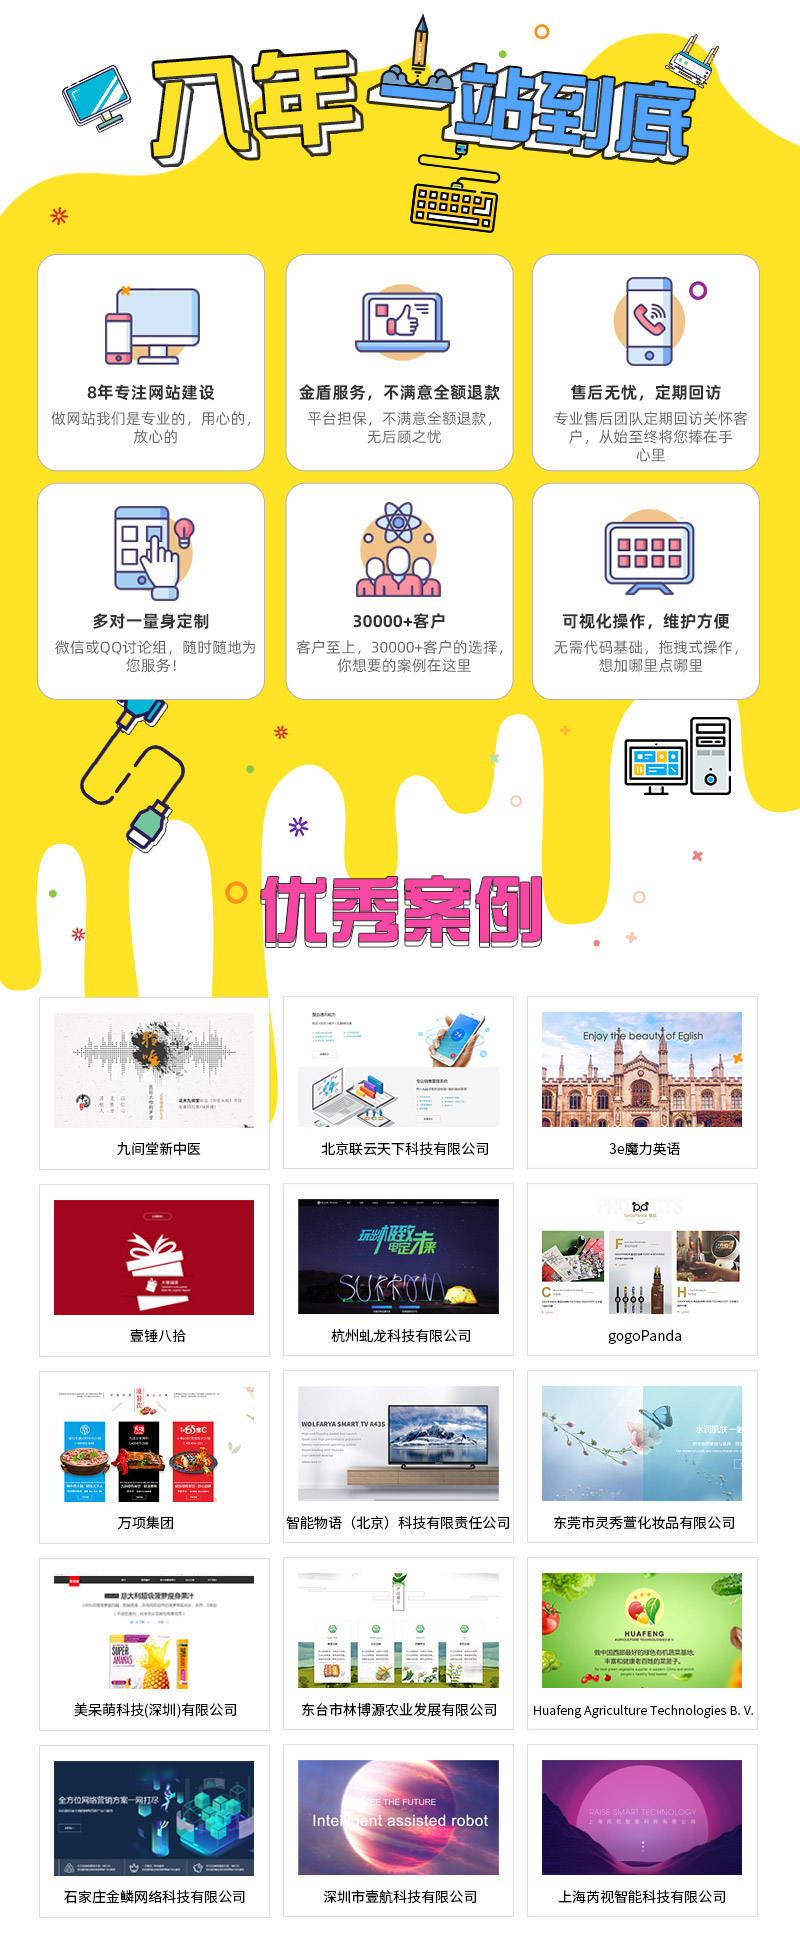 https://netmarket.oss-cn-hangzhou.aliyuncs.com/product/201ec444263b4395ae366737d2425536.jpg